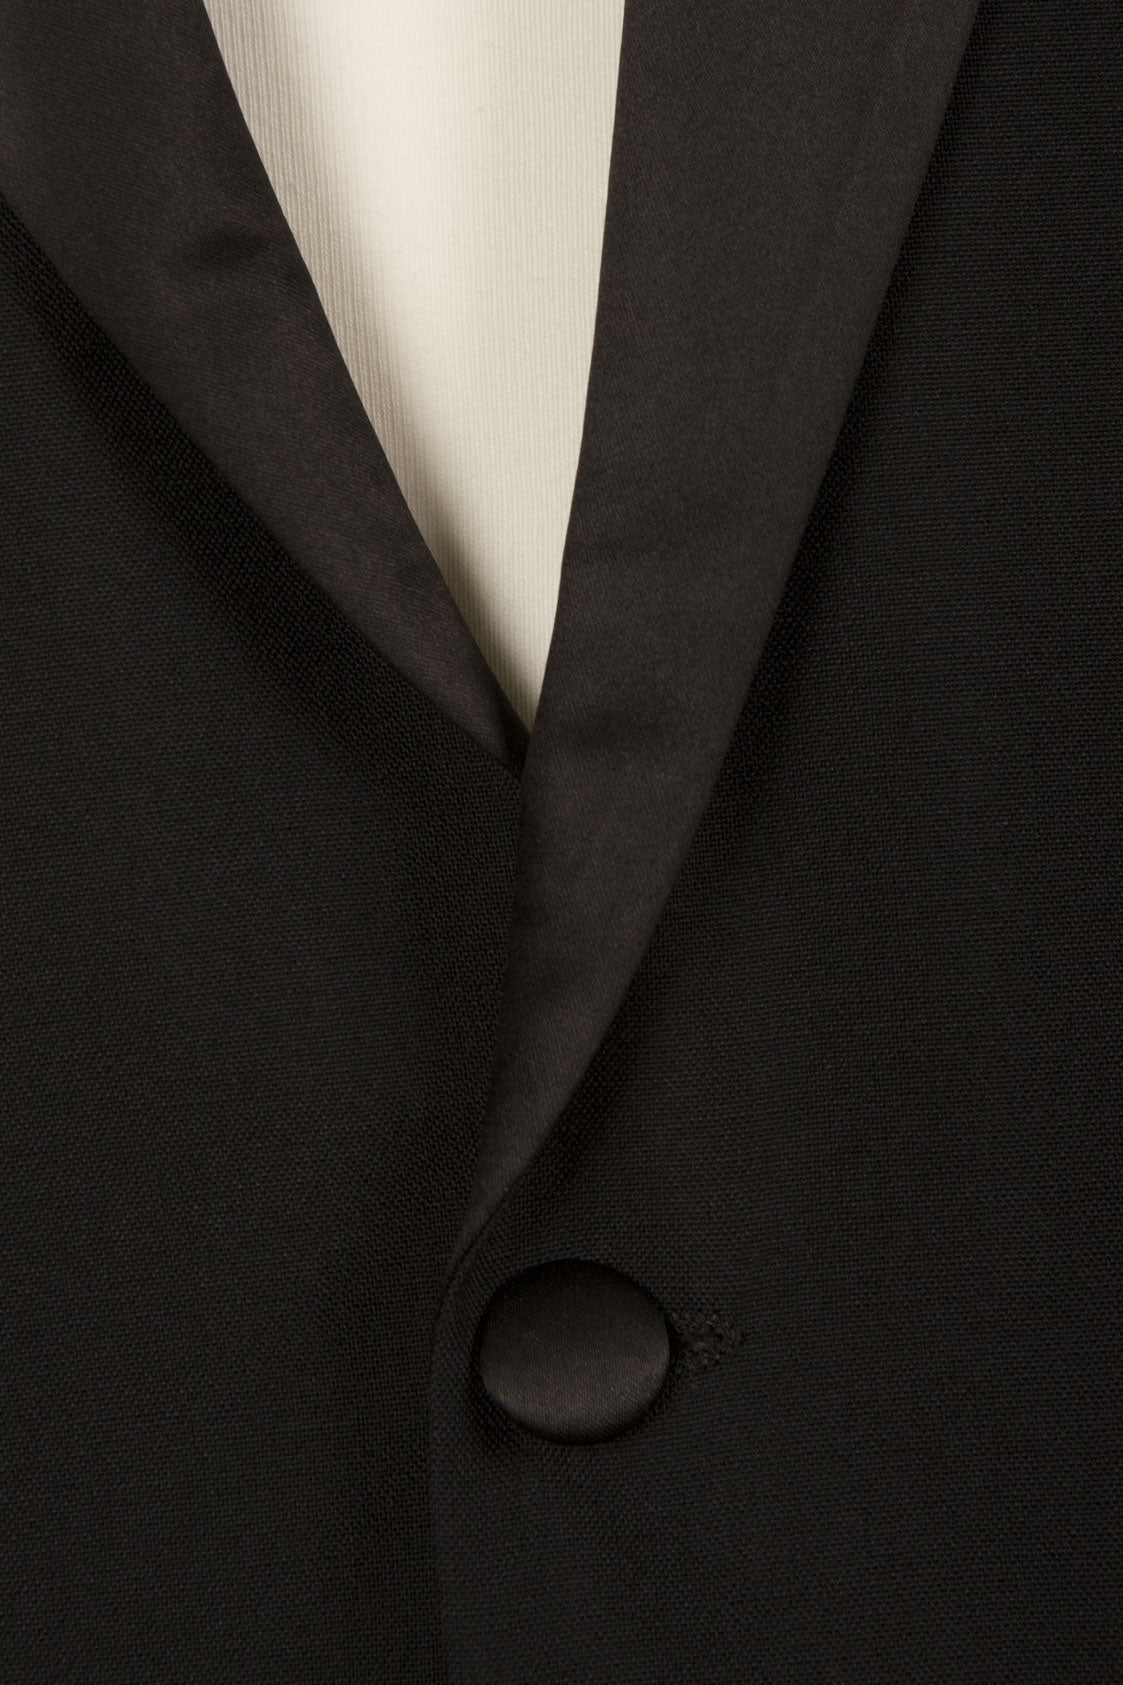 Black Dinner Jacket Tuxedo - Brand New